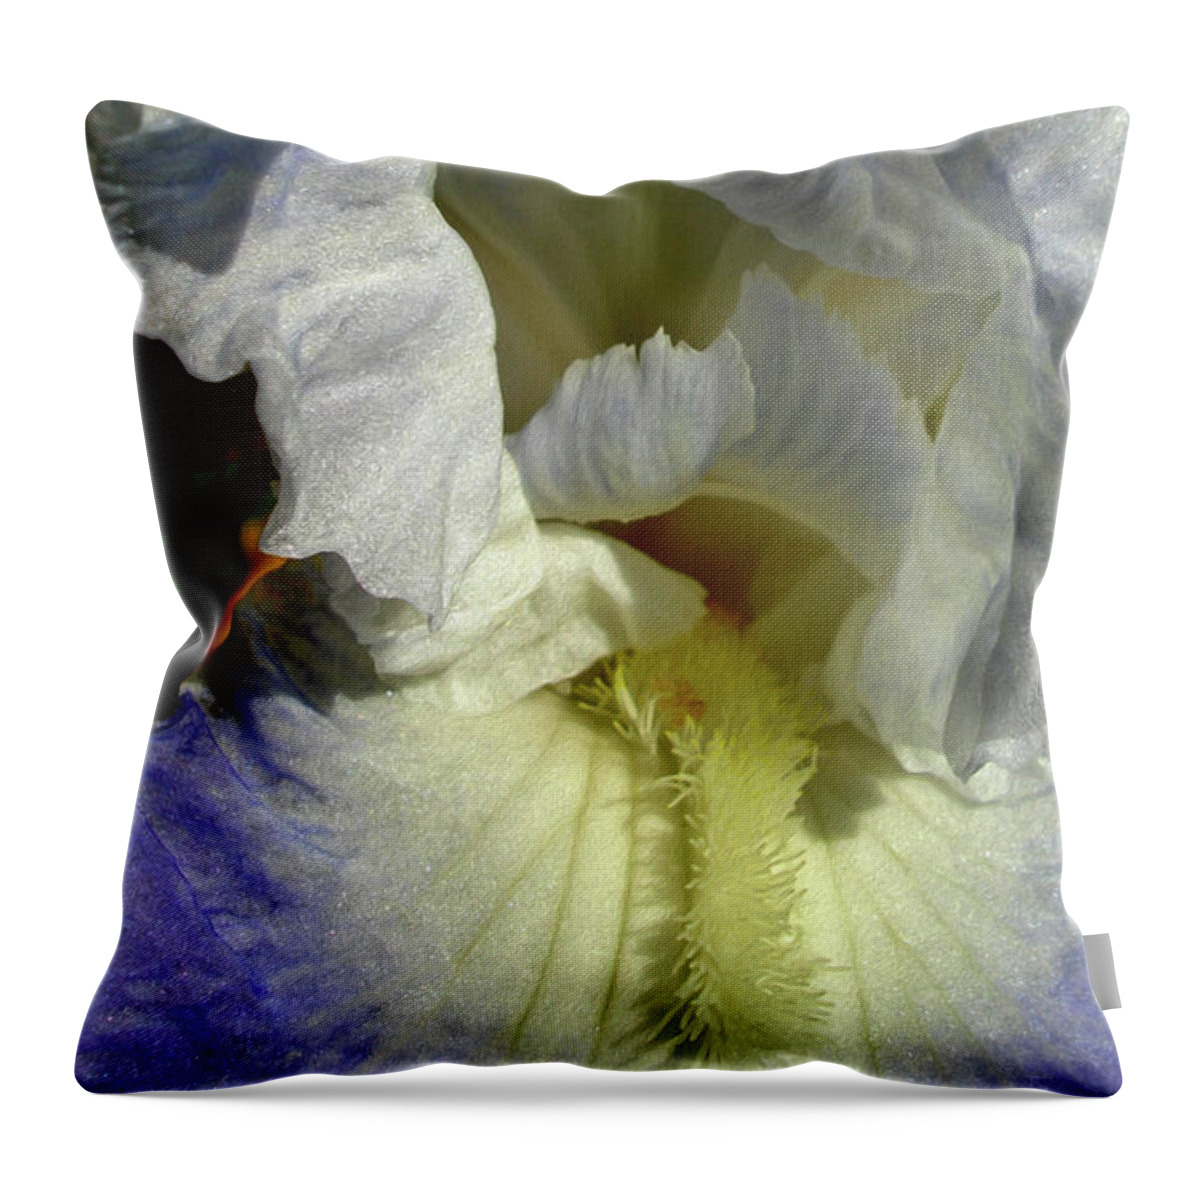 Flower Throw Pillow featuring the digital art Feather Petals 3 by Lynda Lehmann